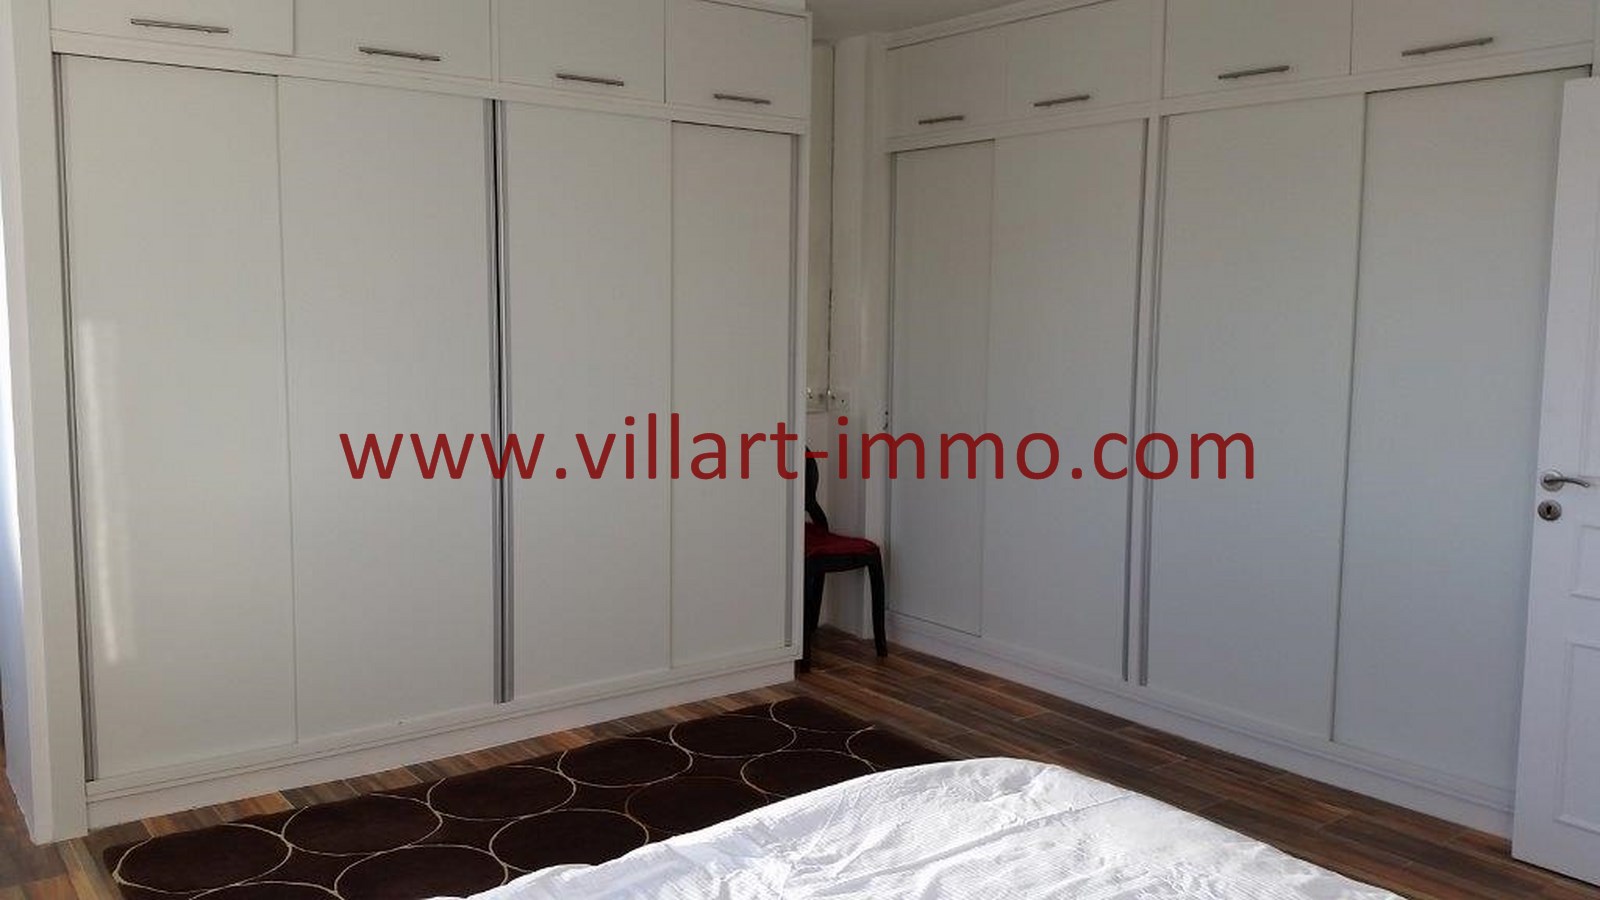 11-Location-Appartement-Meublé-Tanger-Dressing du chambre 1-L759-Villart immo